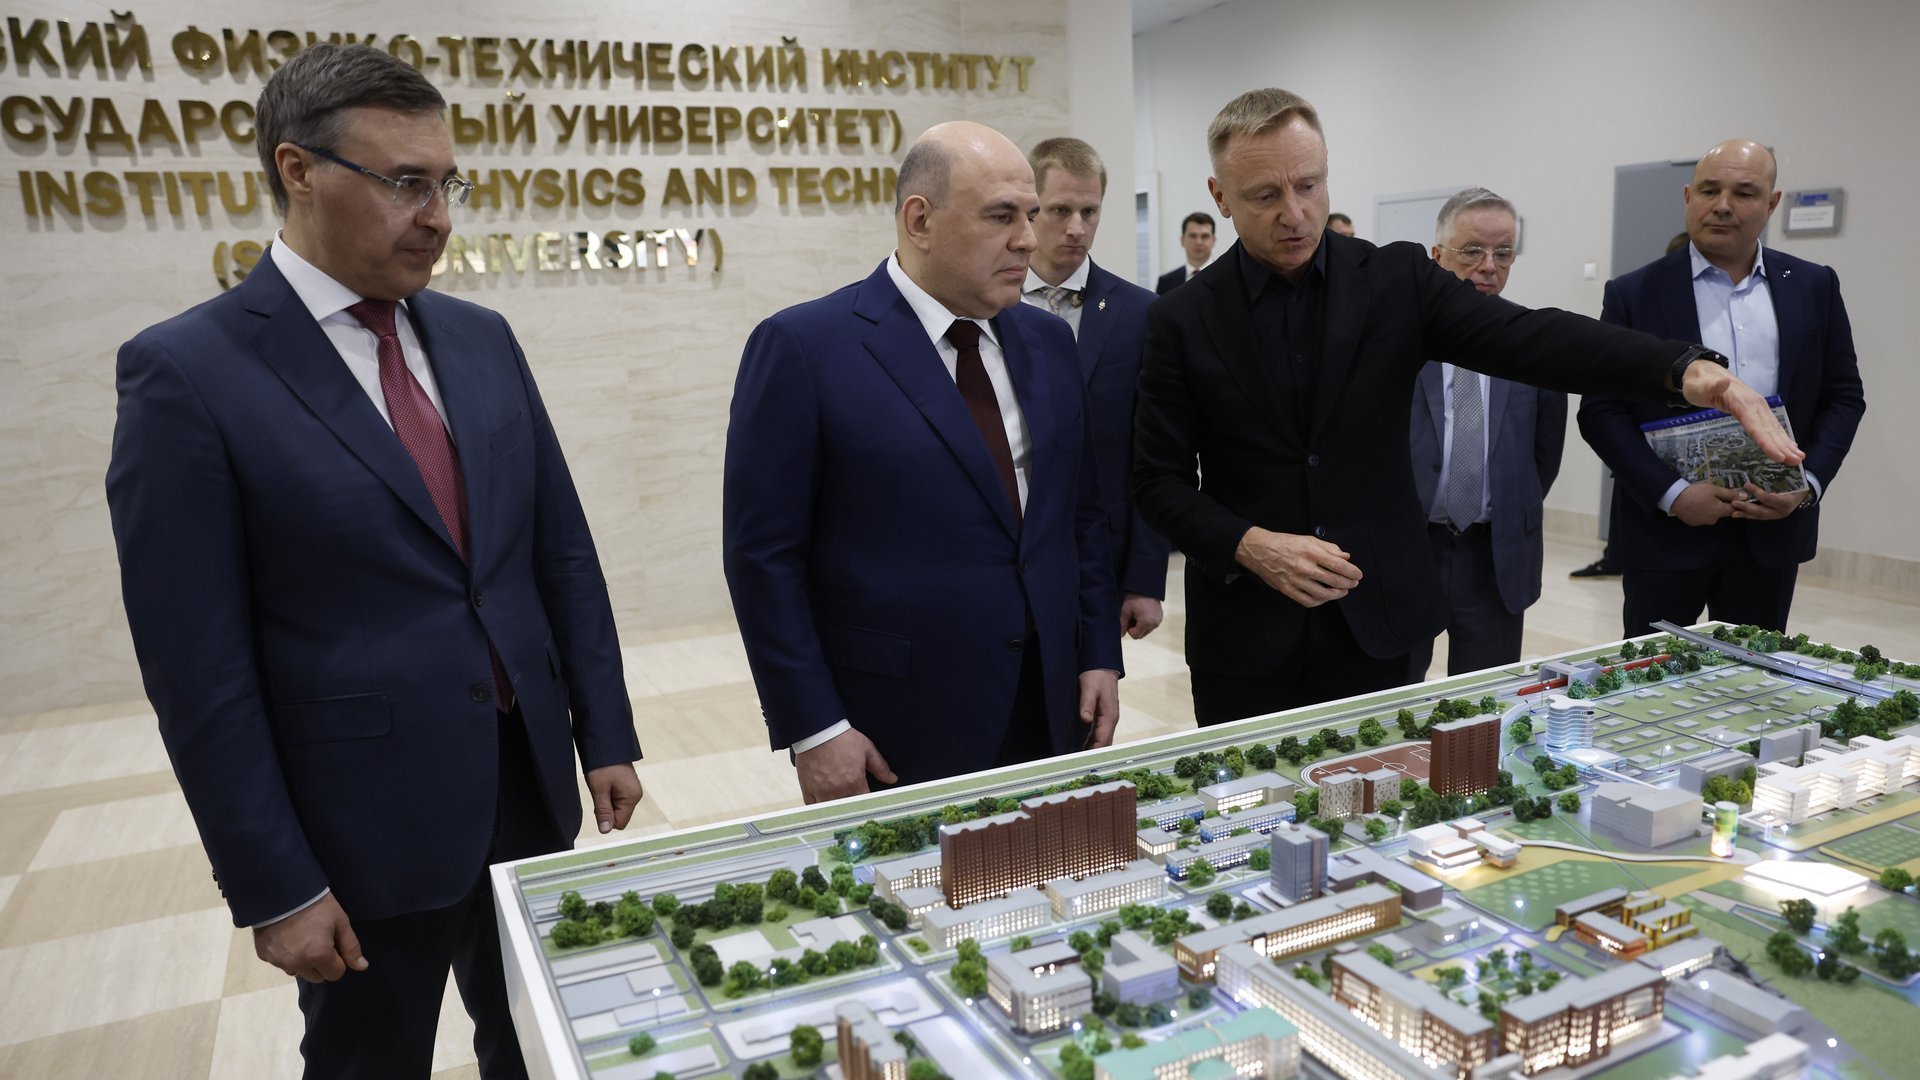 Михаил Мишустин посетил Московский физико-технический институт (национальный исследовательский университет)